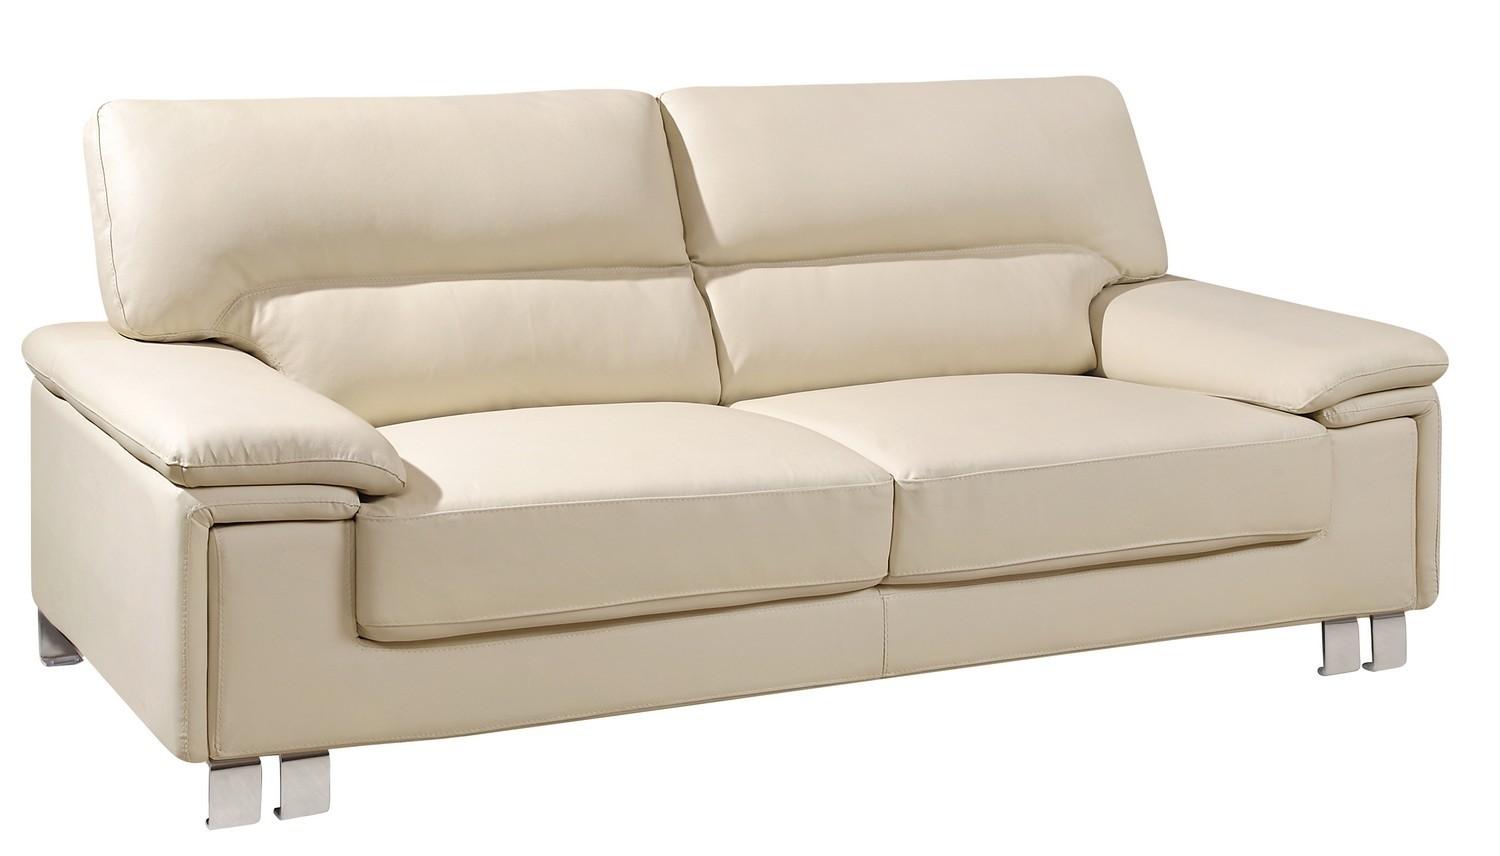 Contemporary Sofa U9399-BEIGE U9399-BEIGE-S in Beige Leather Match